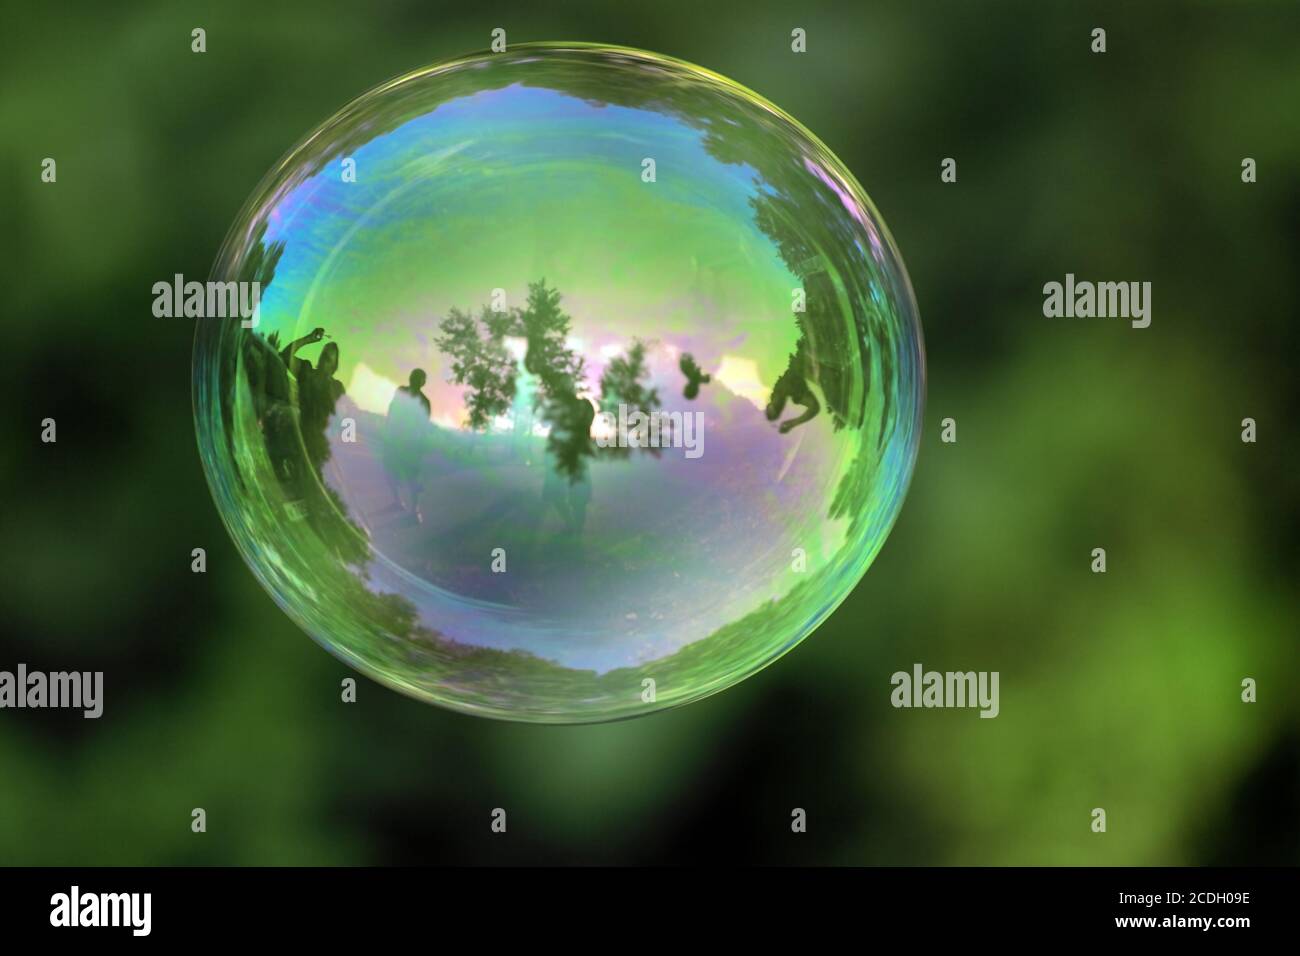 burbuja transparente con reflexiones sobre una org verde Foto de stock